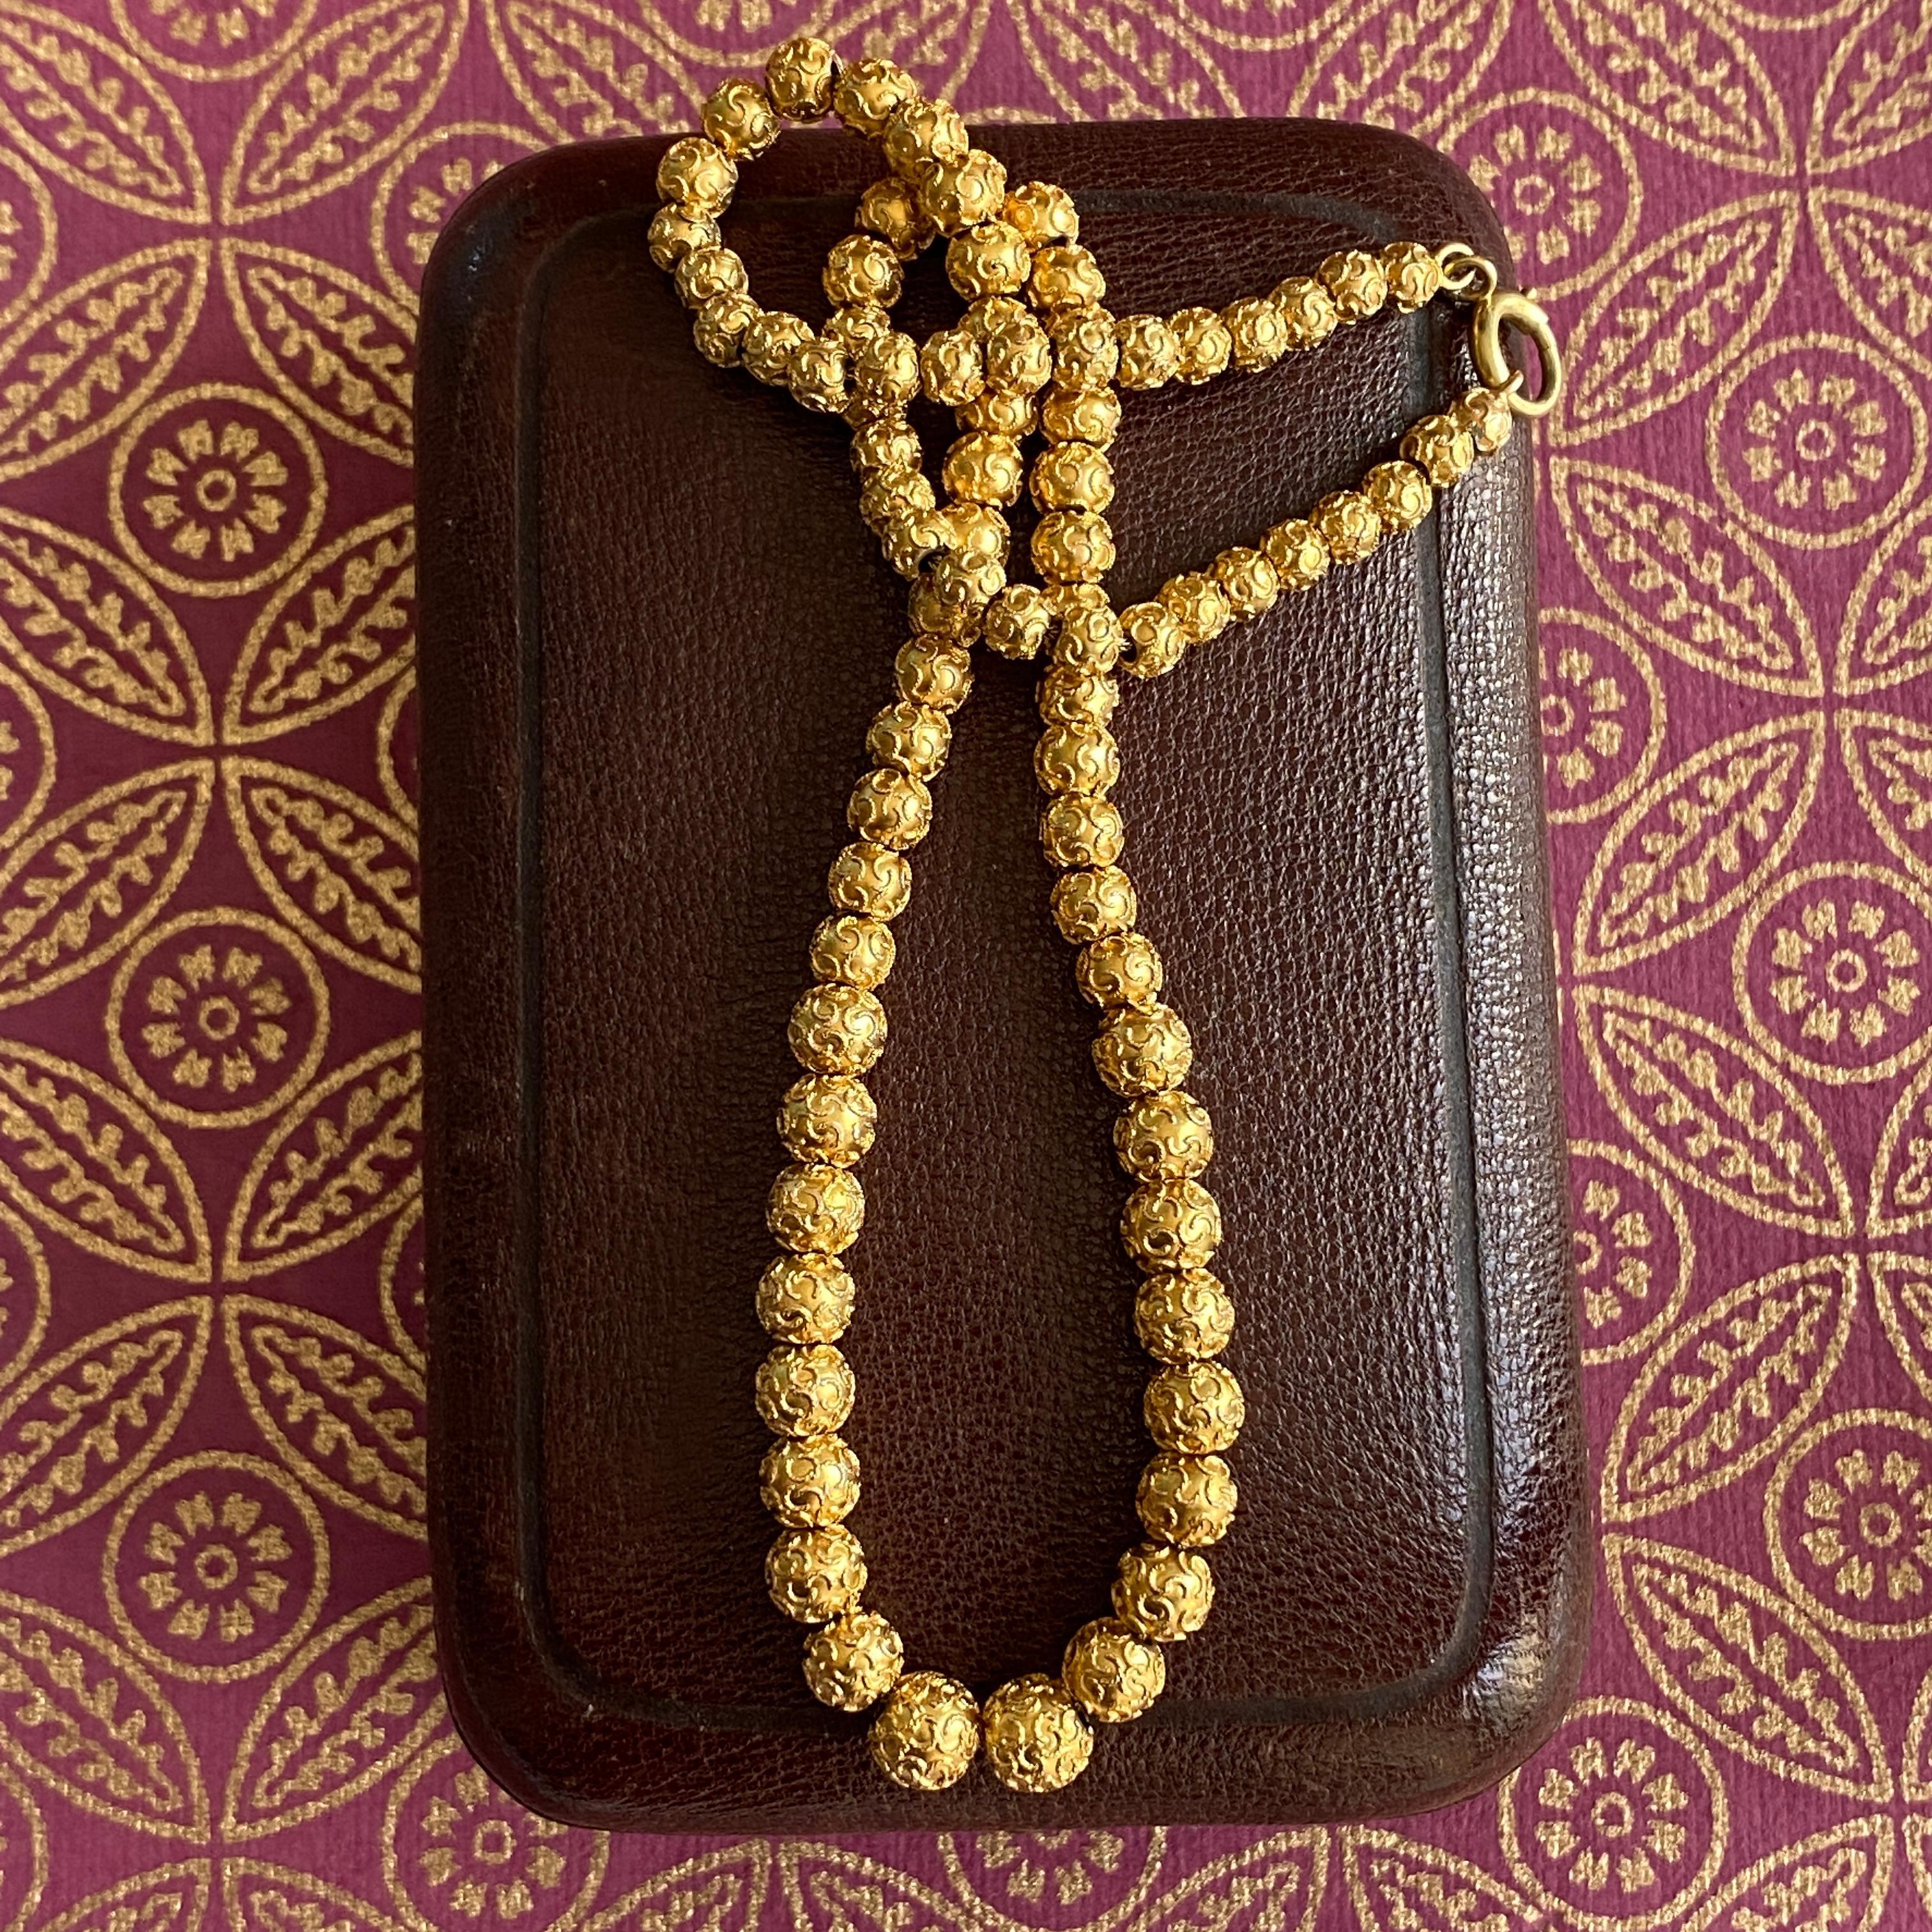 Einzelheiten:
Wunderschöne viktorianische etruskische Perlenkette aus 18/14 K hellgelbem Buttergold. Die Perlen sind aufwändig mit kleinen, gewirbelten Filigranen verziert, was bei diesen viktorianischen Perlenketten nicht üblich ist und dieses